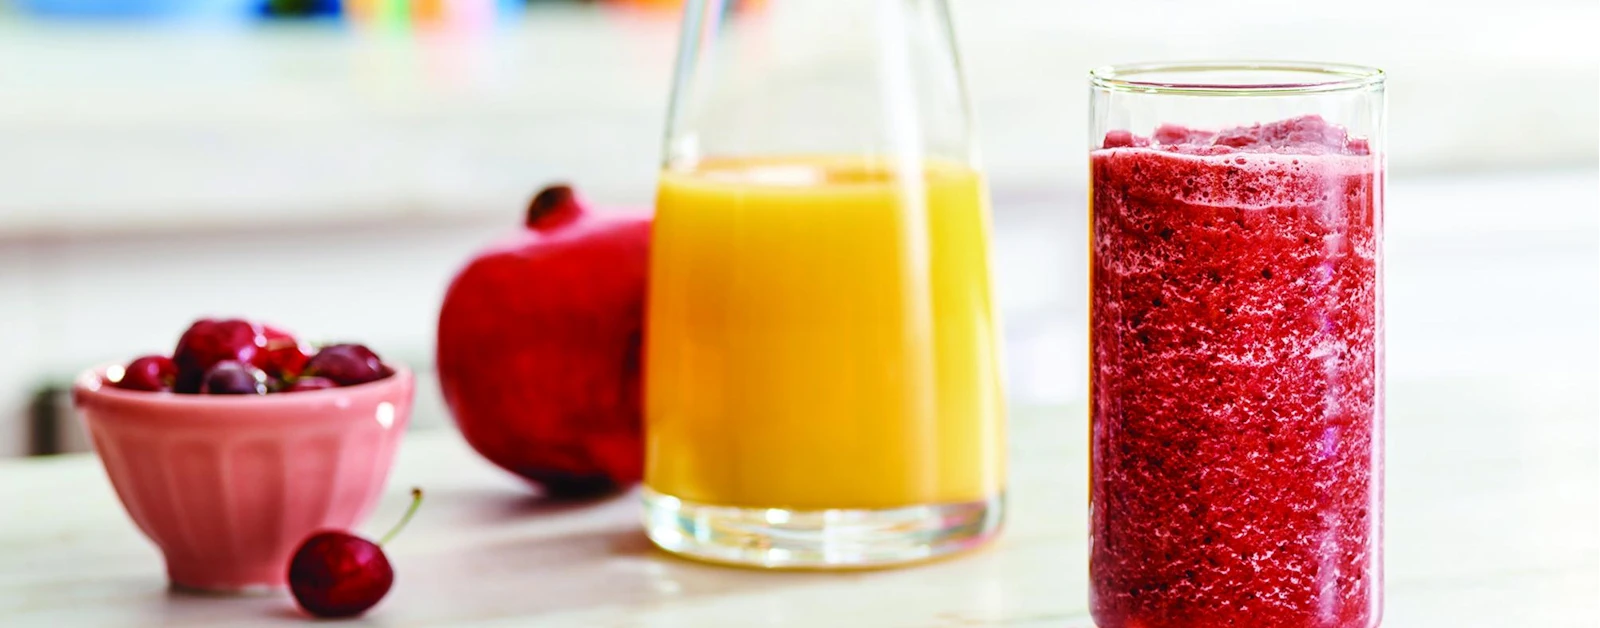 Immune System Boosting Super Fruit Smoothie Recipe